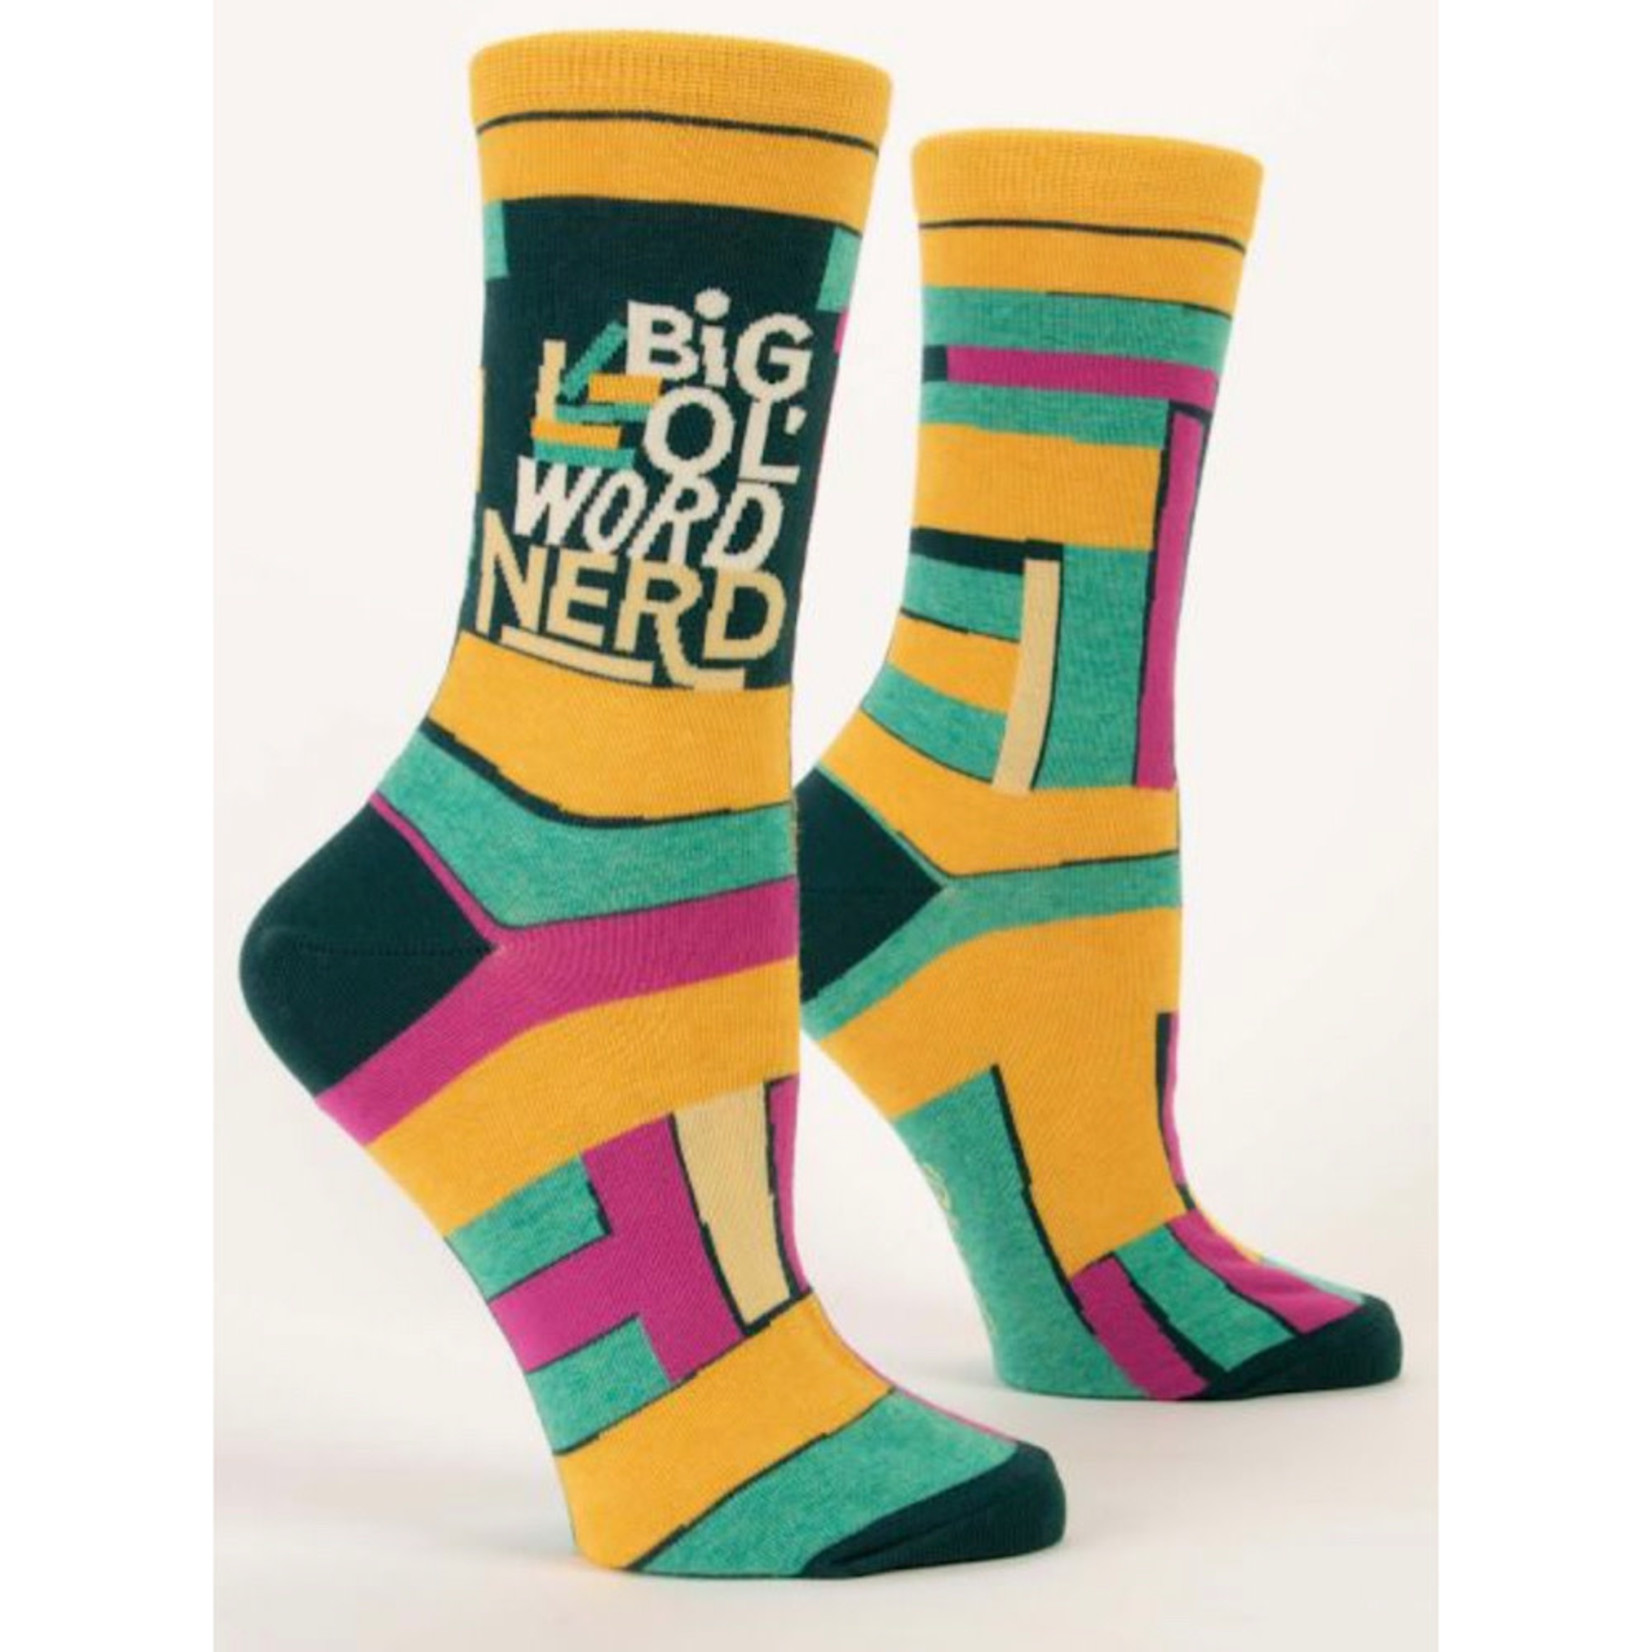 Socks (Womens) - Big Ol Word Nerd